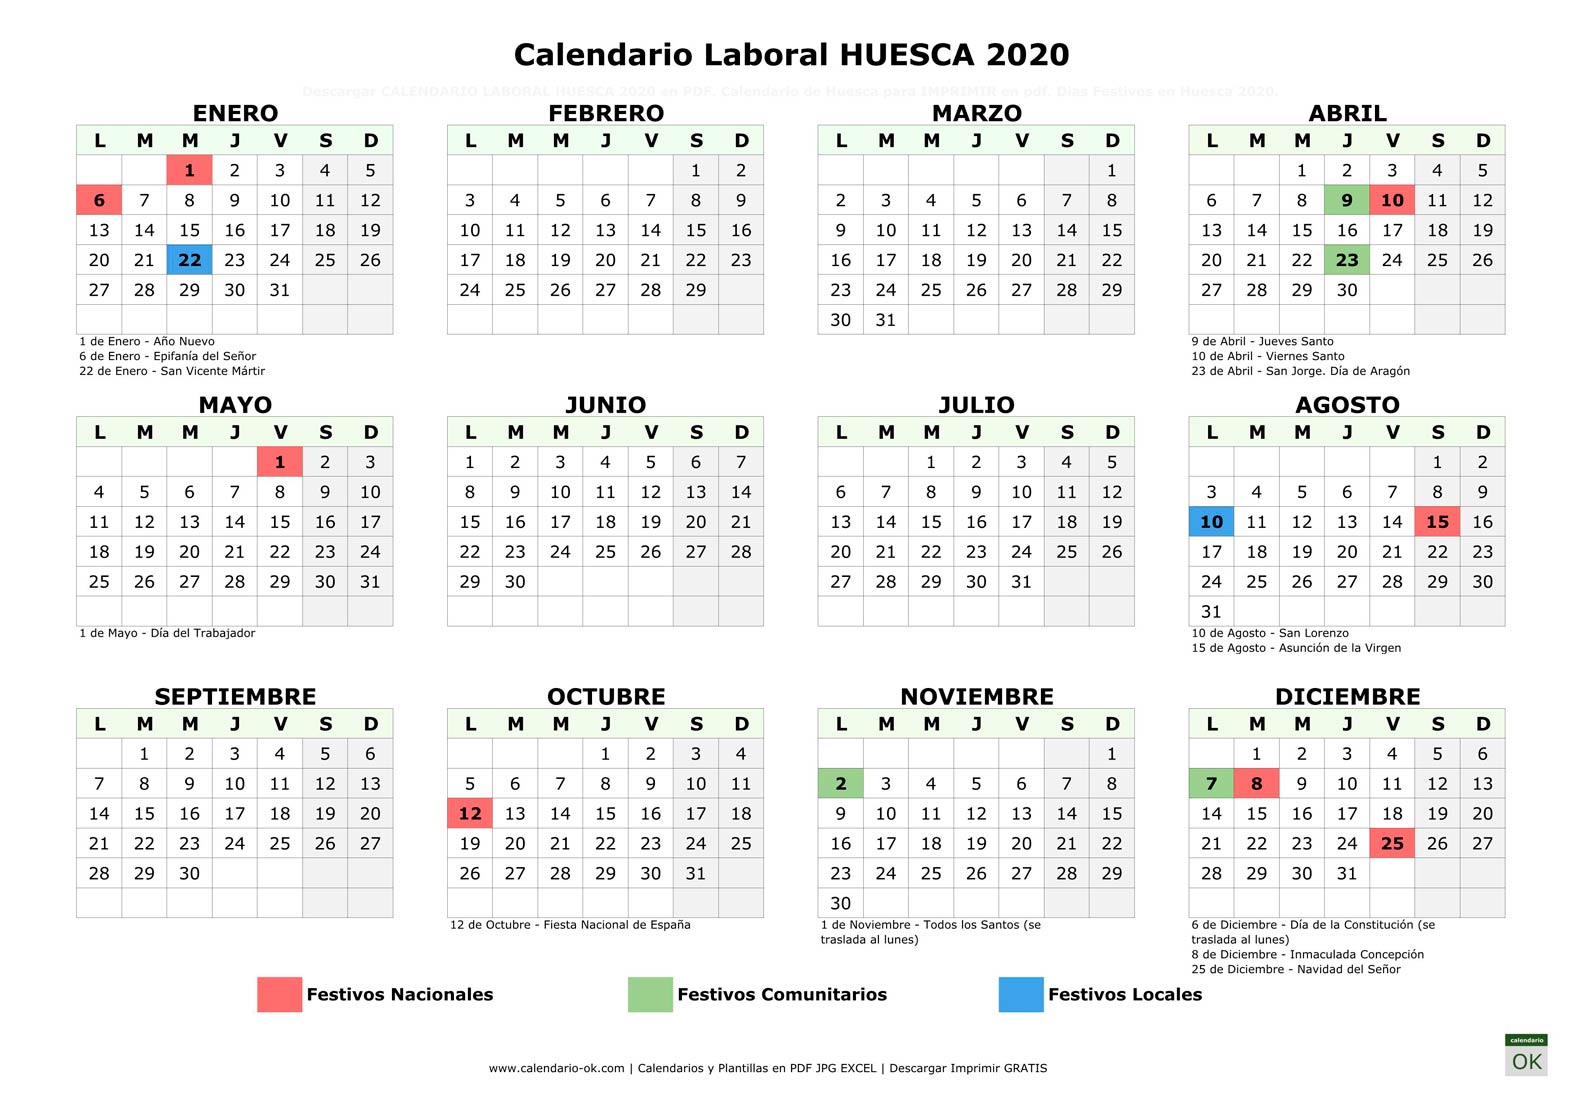 Calendario Laboral HUESCA 2020 horizontal